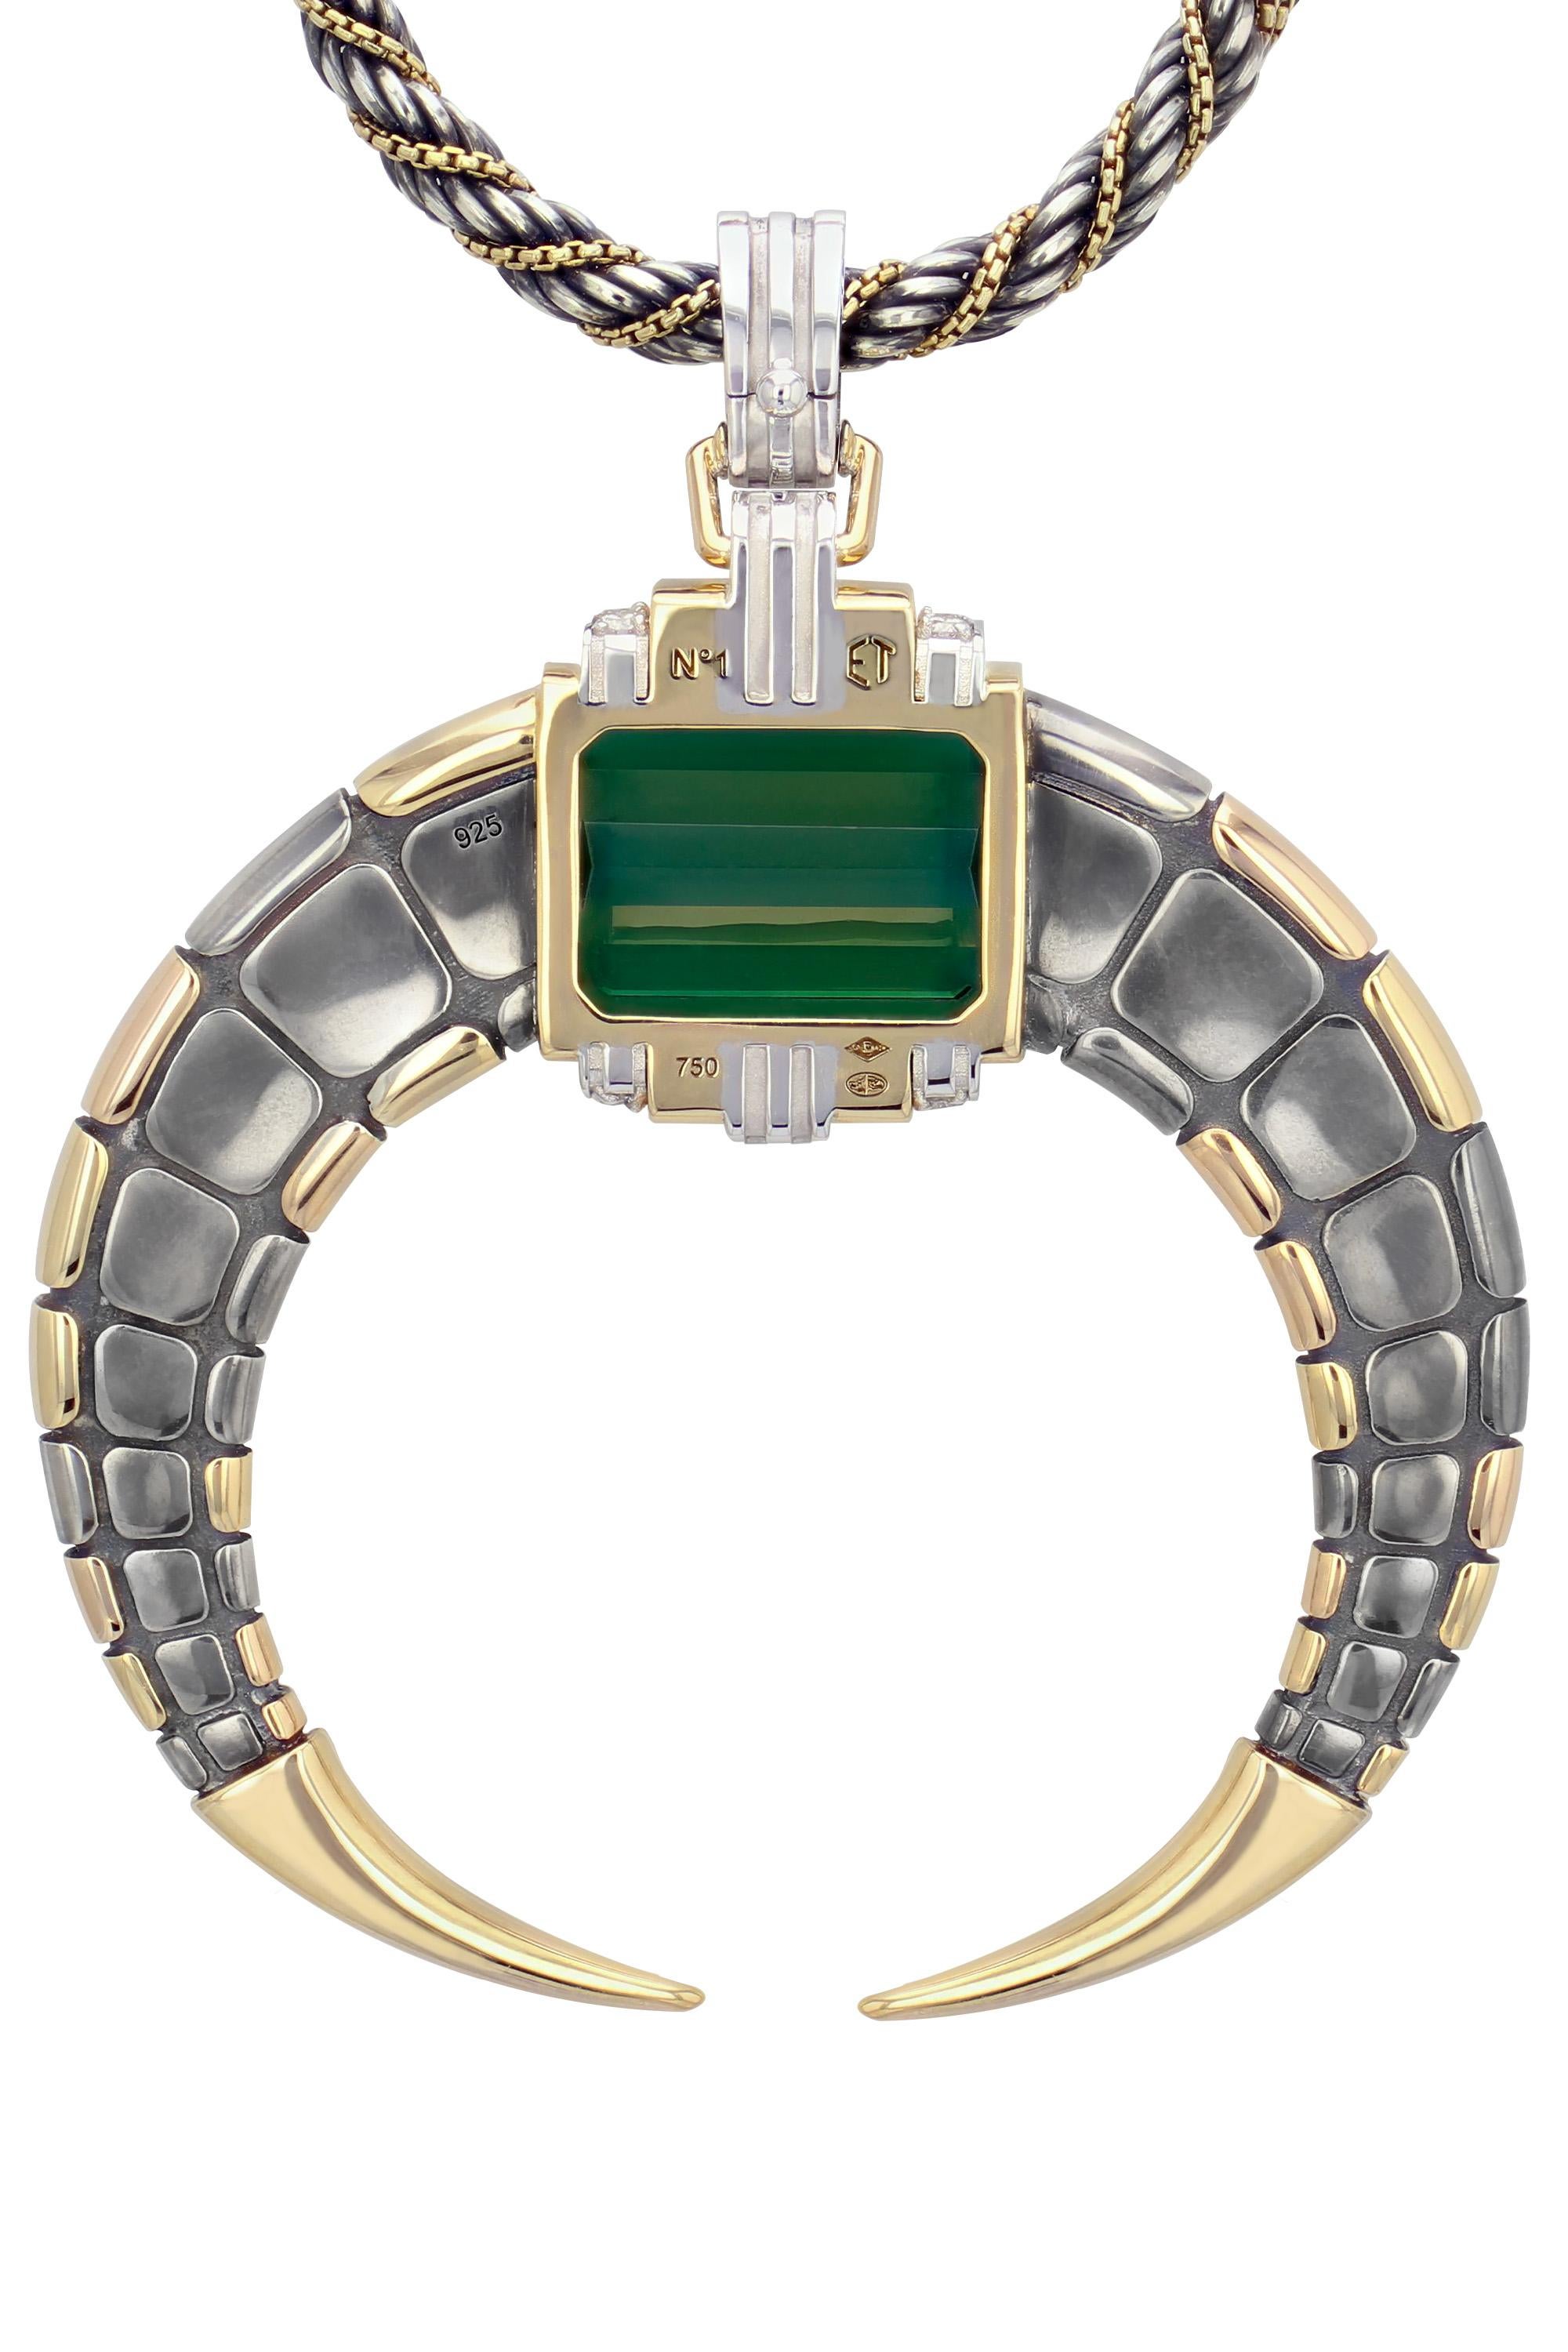 Emerald Cut Tourmaline Double Dorsale Pendant by Elie Top For Sale